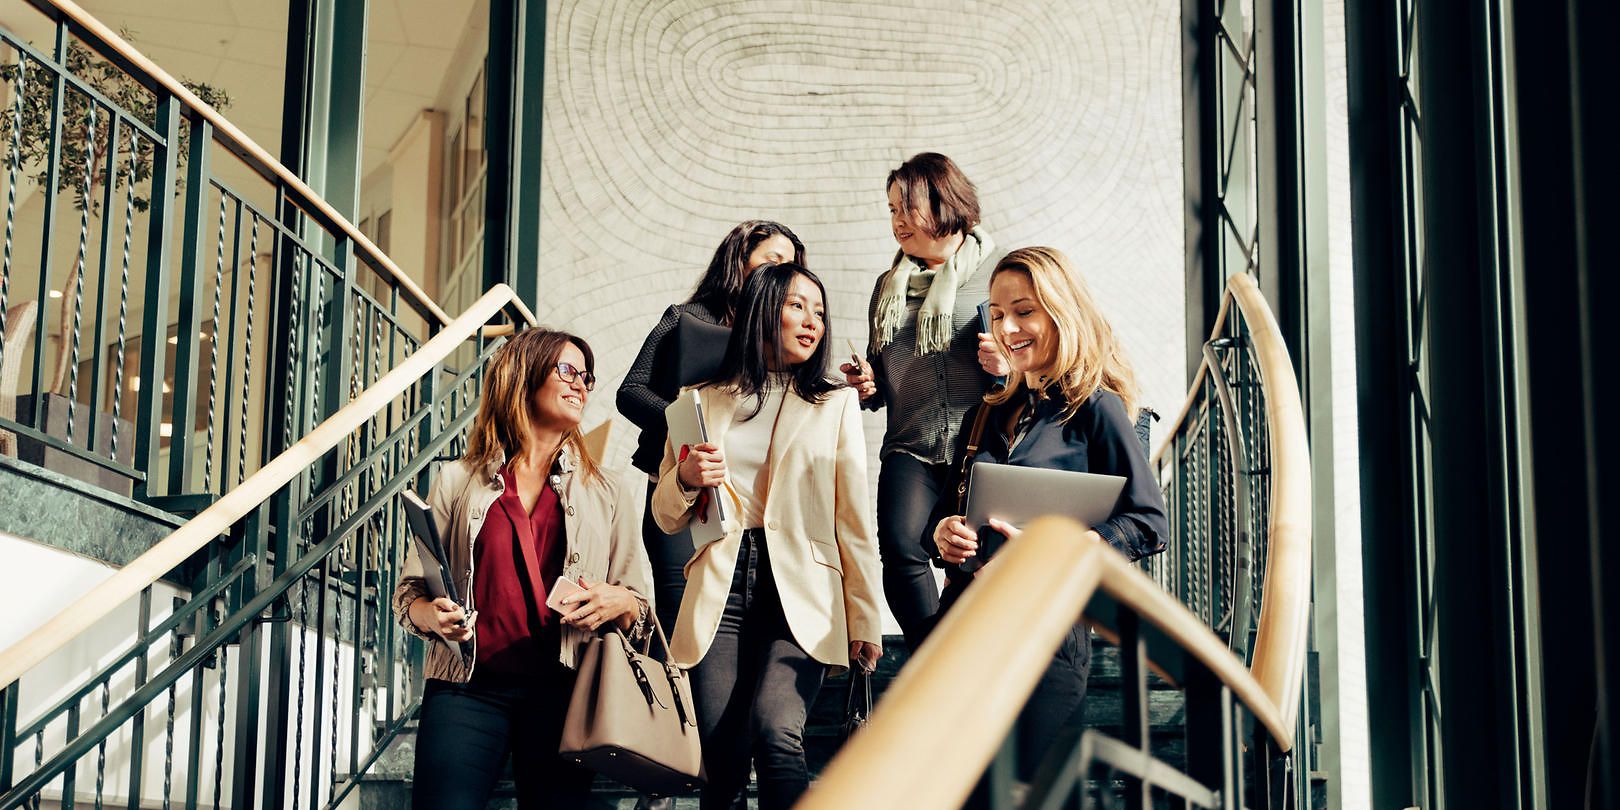 Fünf Frauen in Businesskleidung gehen Treppenstufen hinunter und unterhalten sich währenddessen.